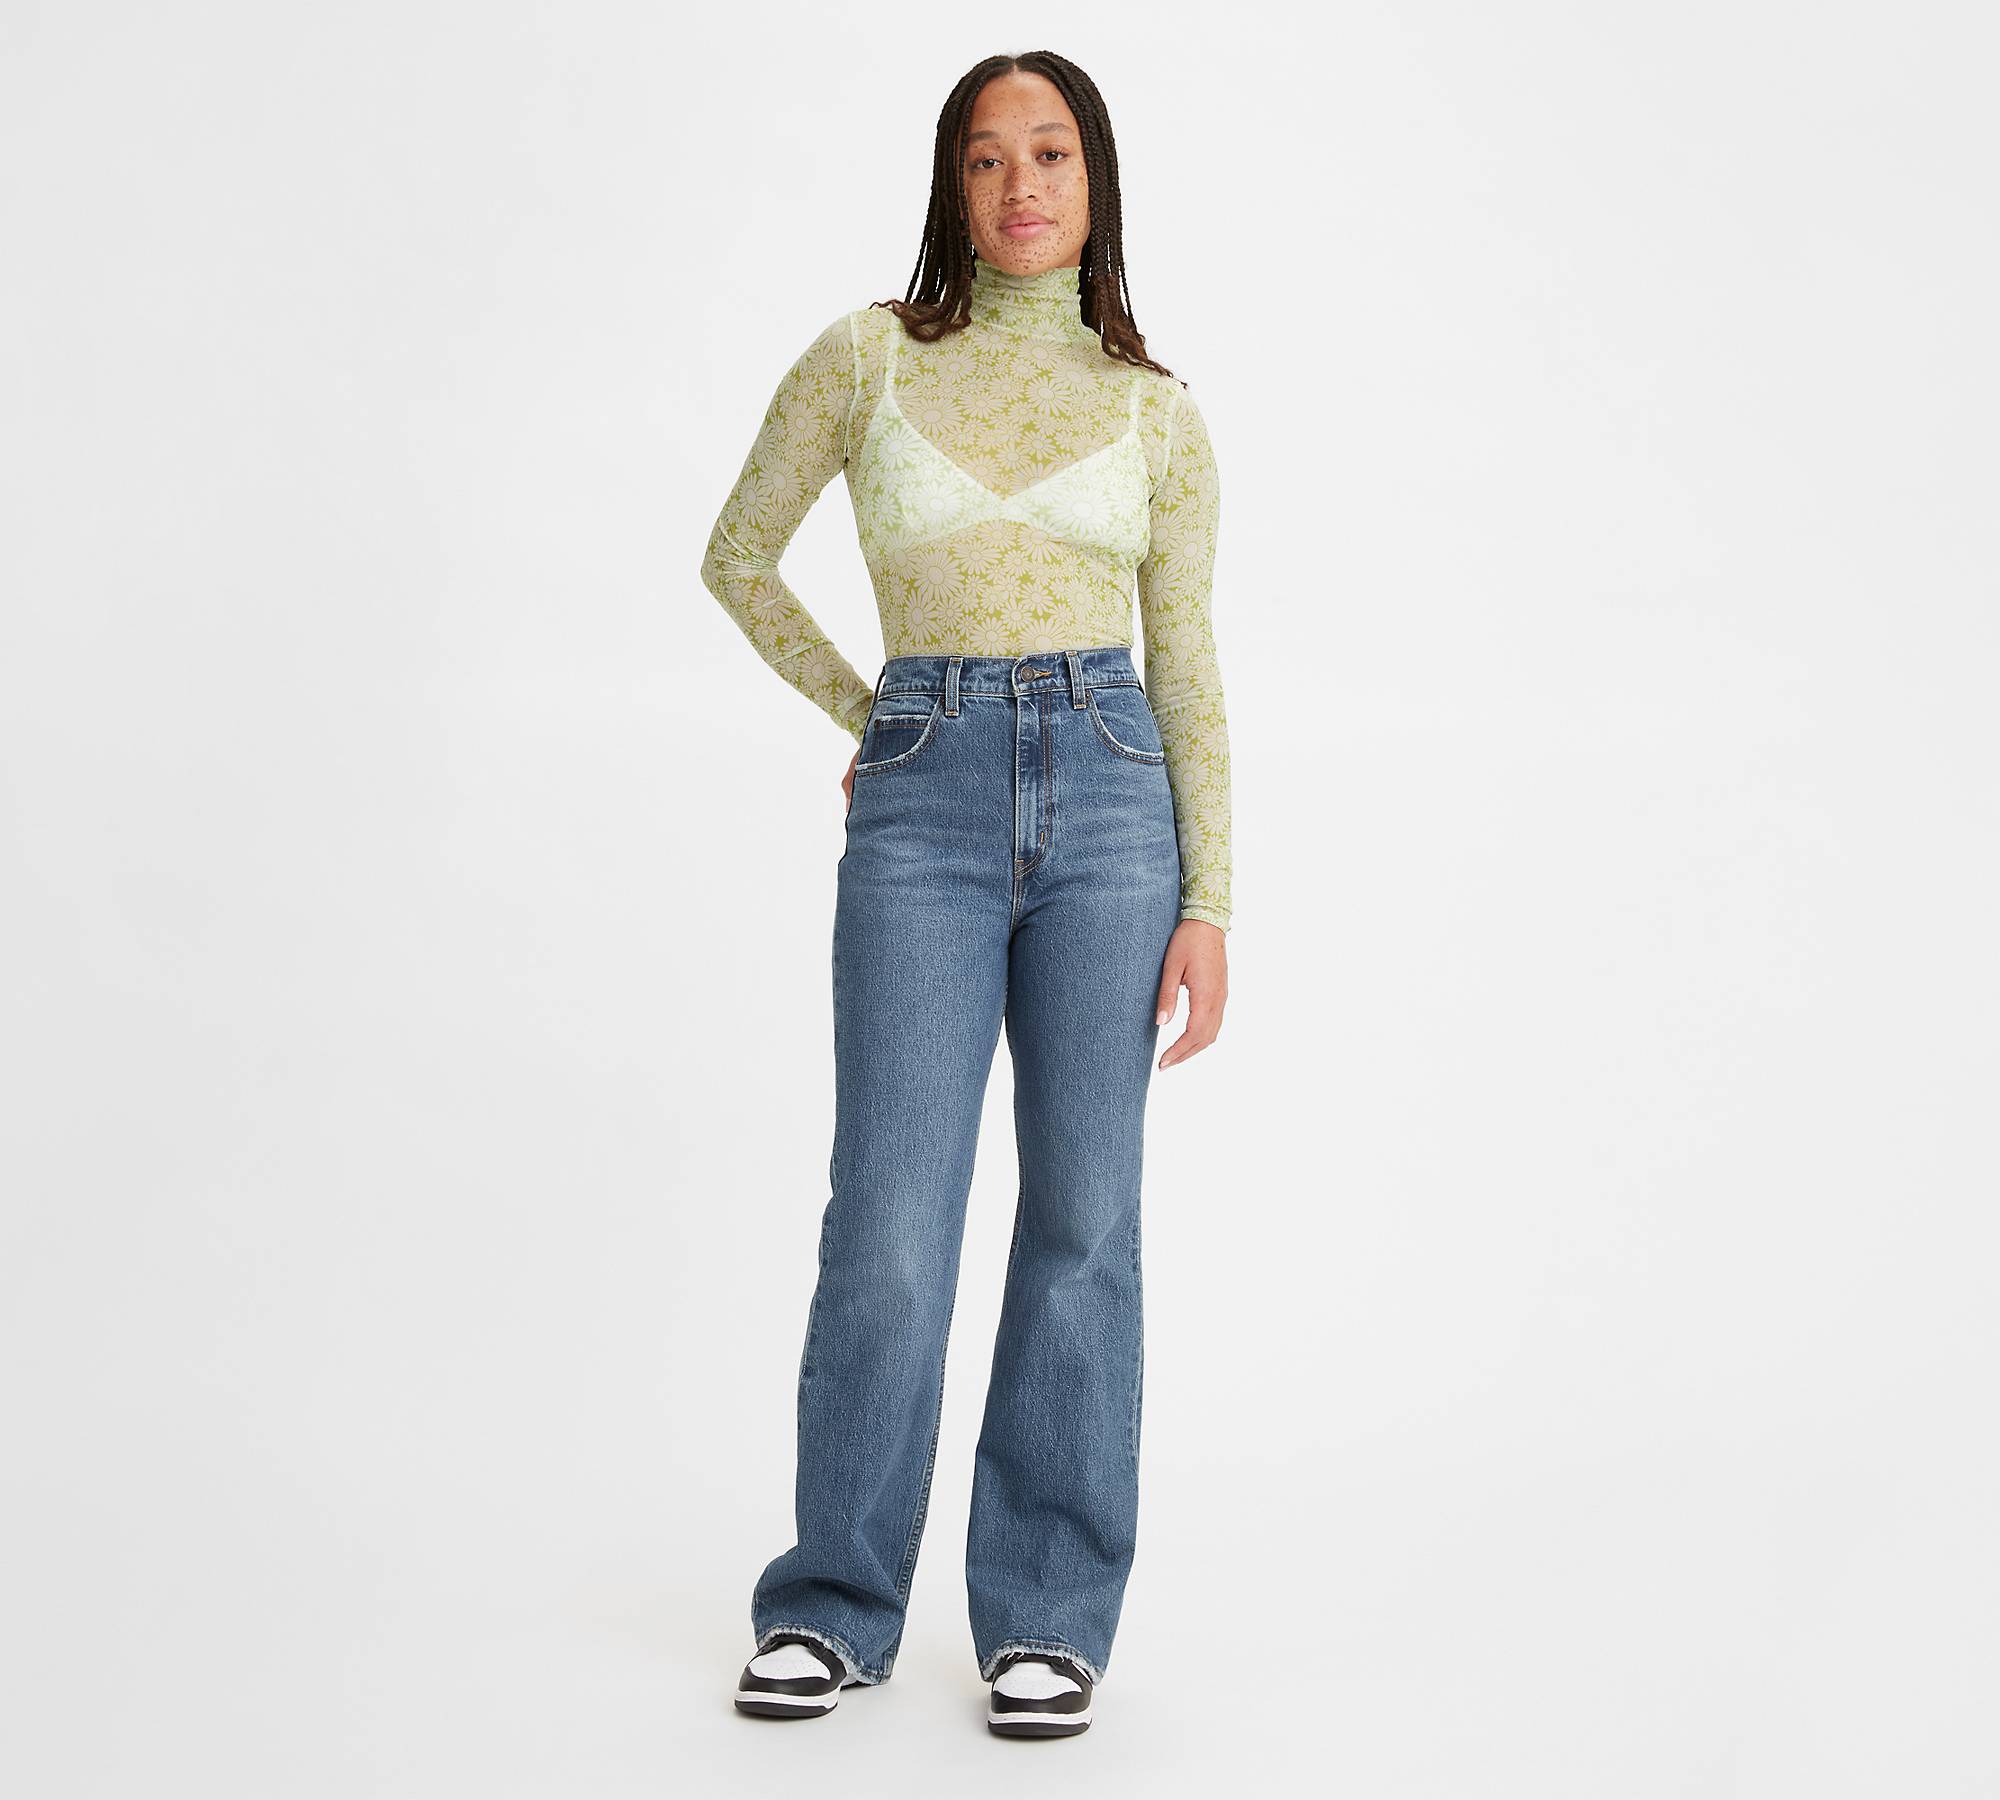 Women's Ultra High Rise Stretch Flare Jean